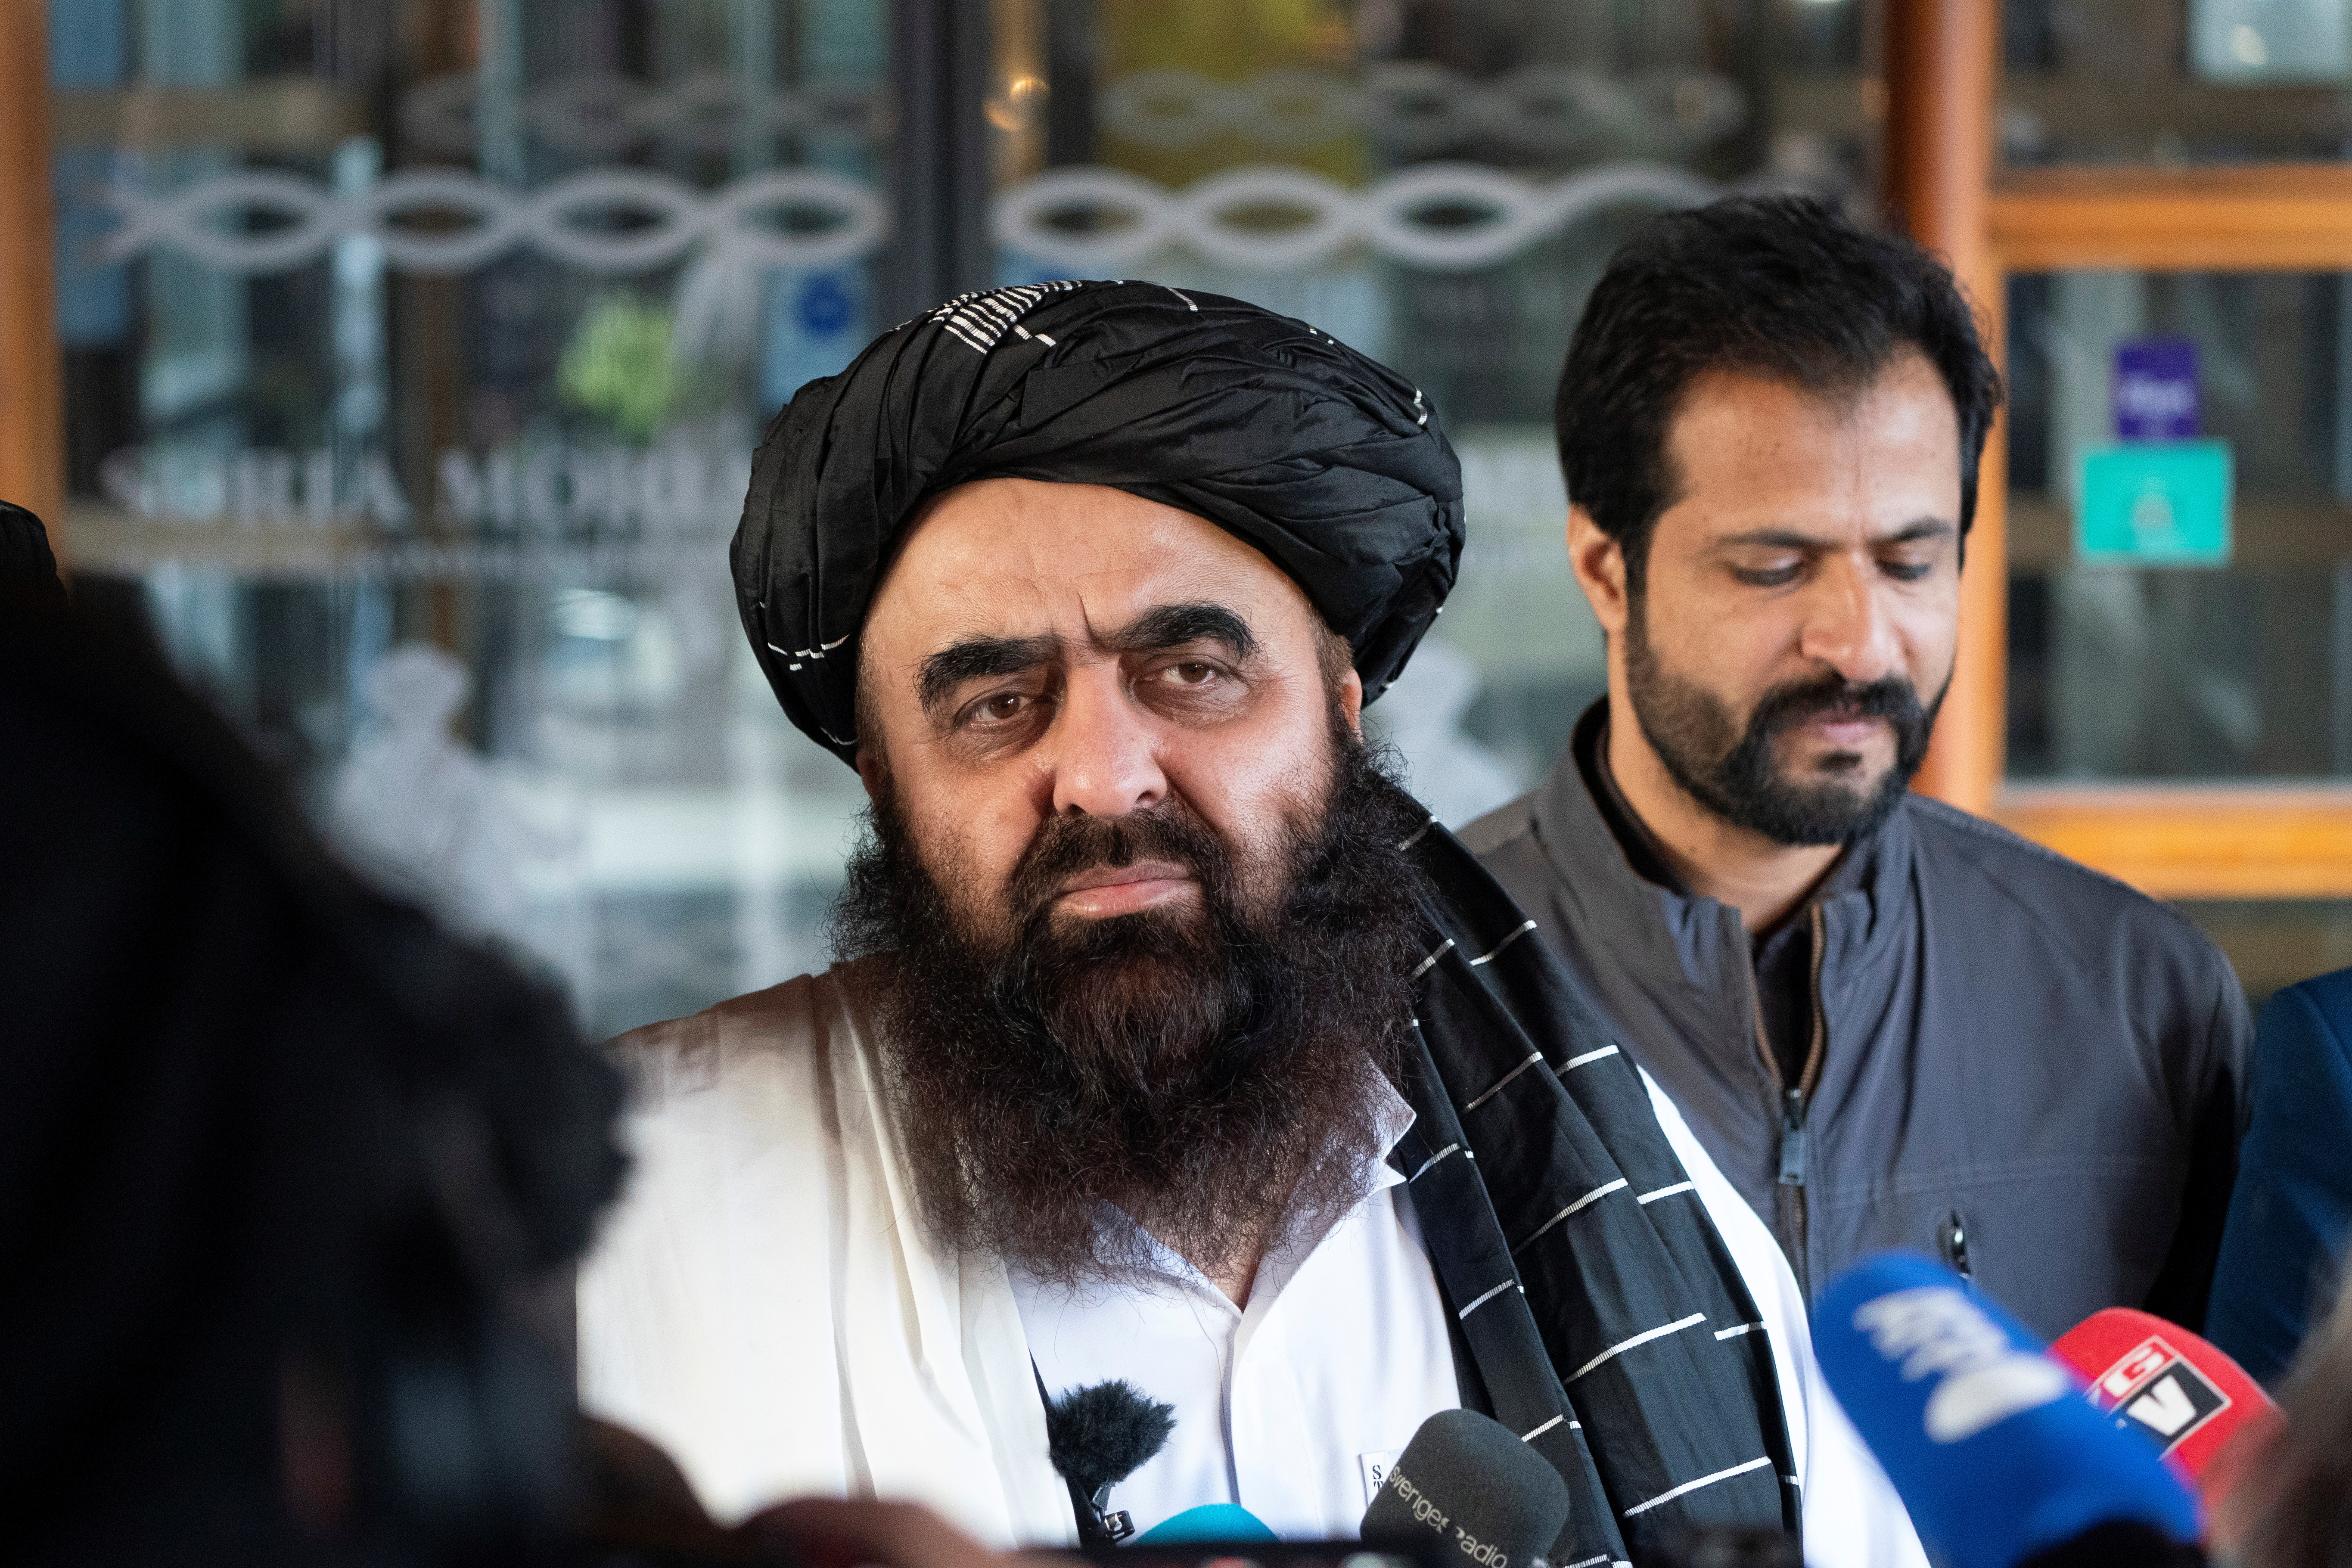 Taliban delegation visits Norway for humanitarian talks